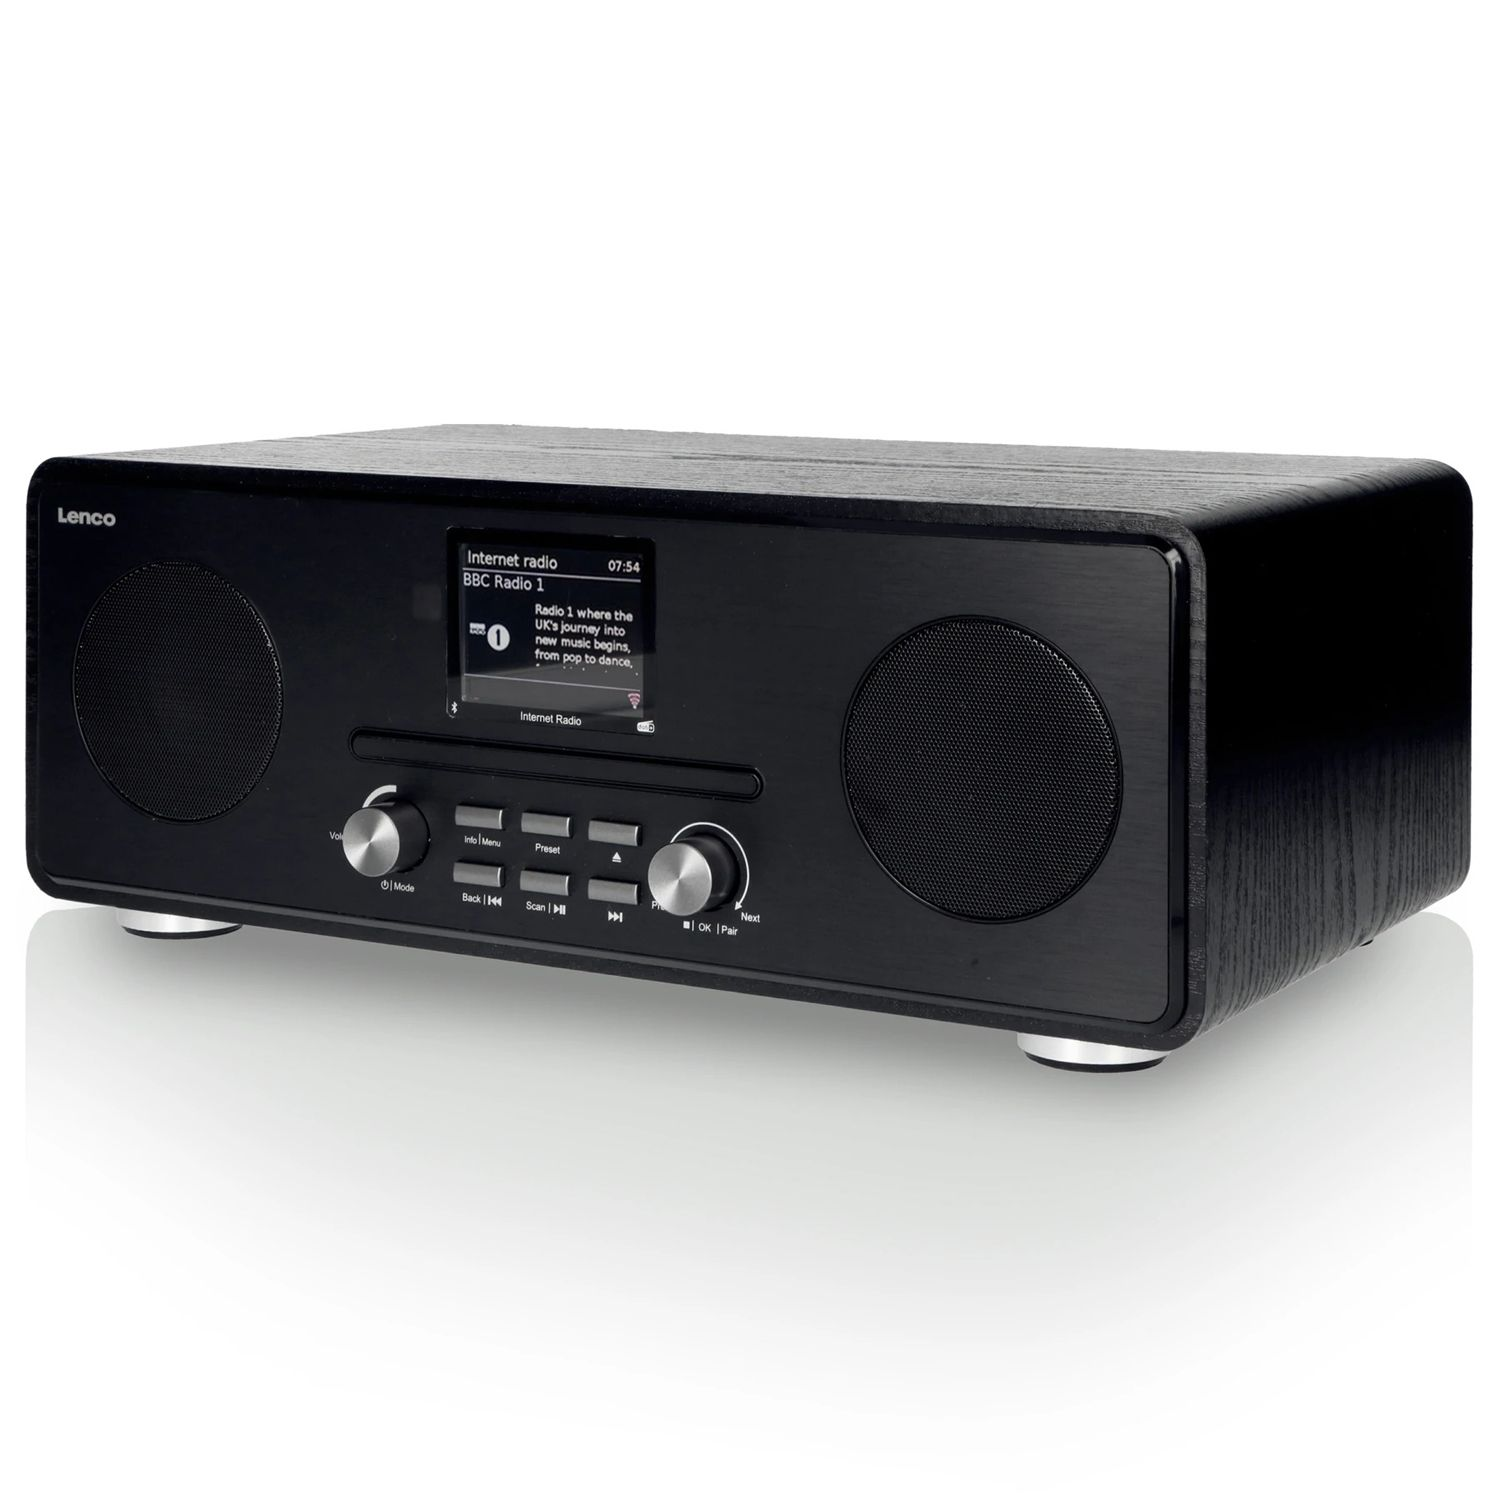 LENCO DIR-260BK Internetradio schwarz DAB+, Bluetooth, DAB+, AM, Radio, Multifunktionsradio, DAB, Internet FM, FM